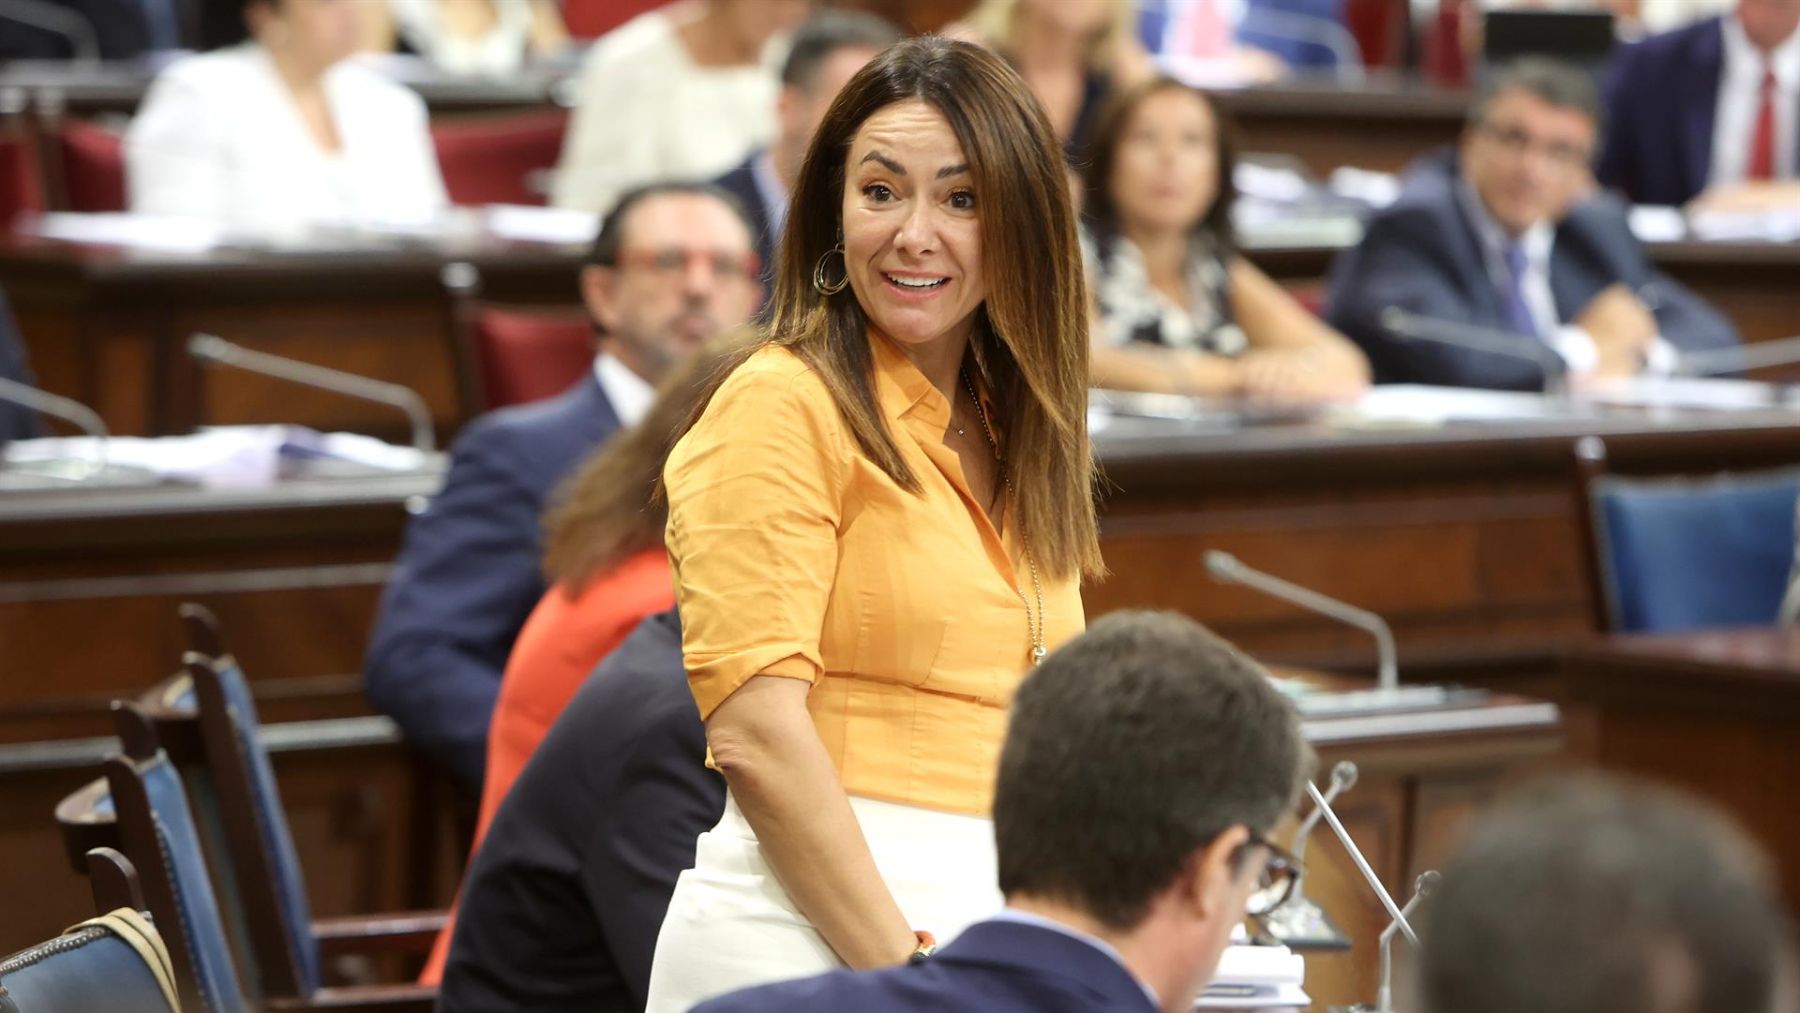 La consellera de Vivienda, Territorio y Movilidad, Marta Vidal durante una sesión de control en el Parlament balear.